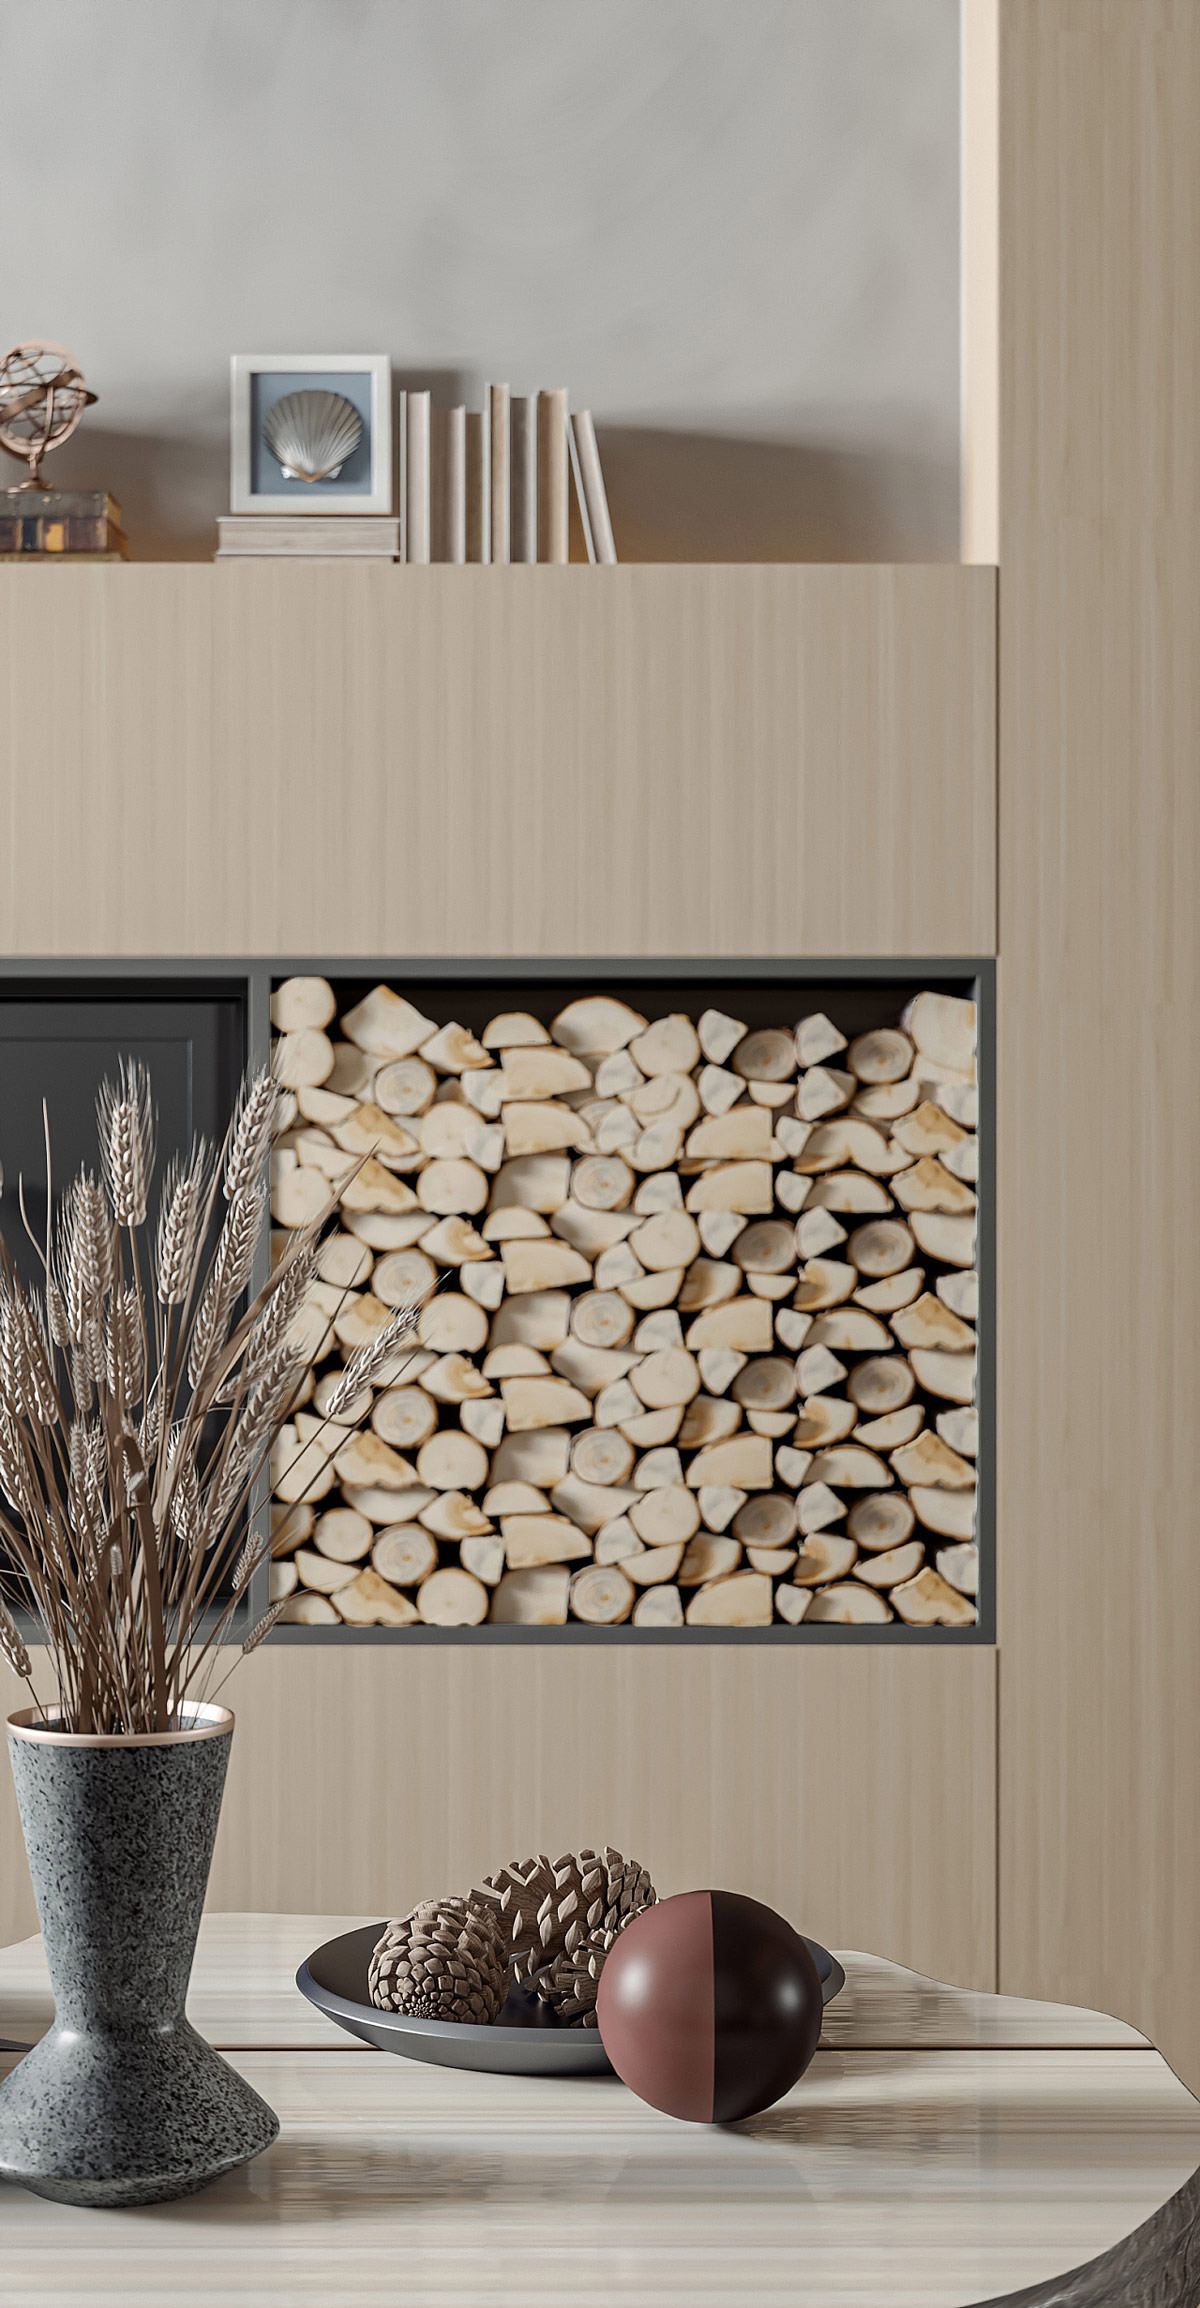 木质+灰色打造温暖时尚的家居空间